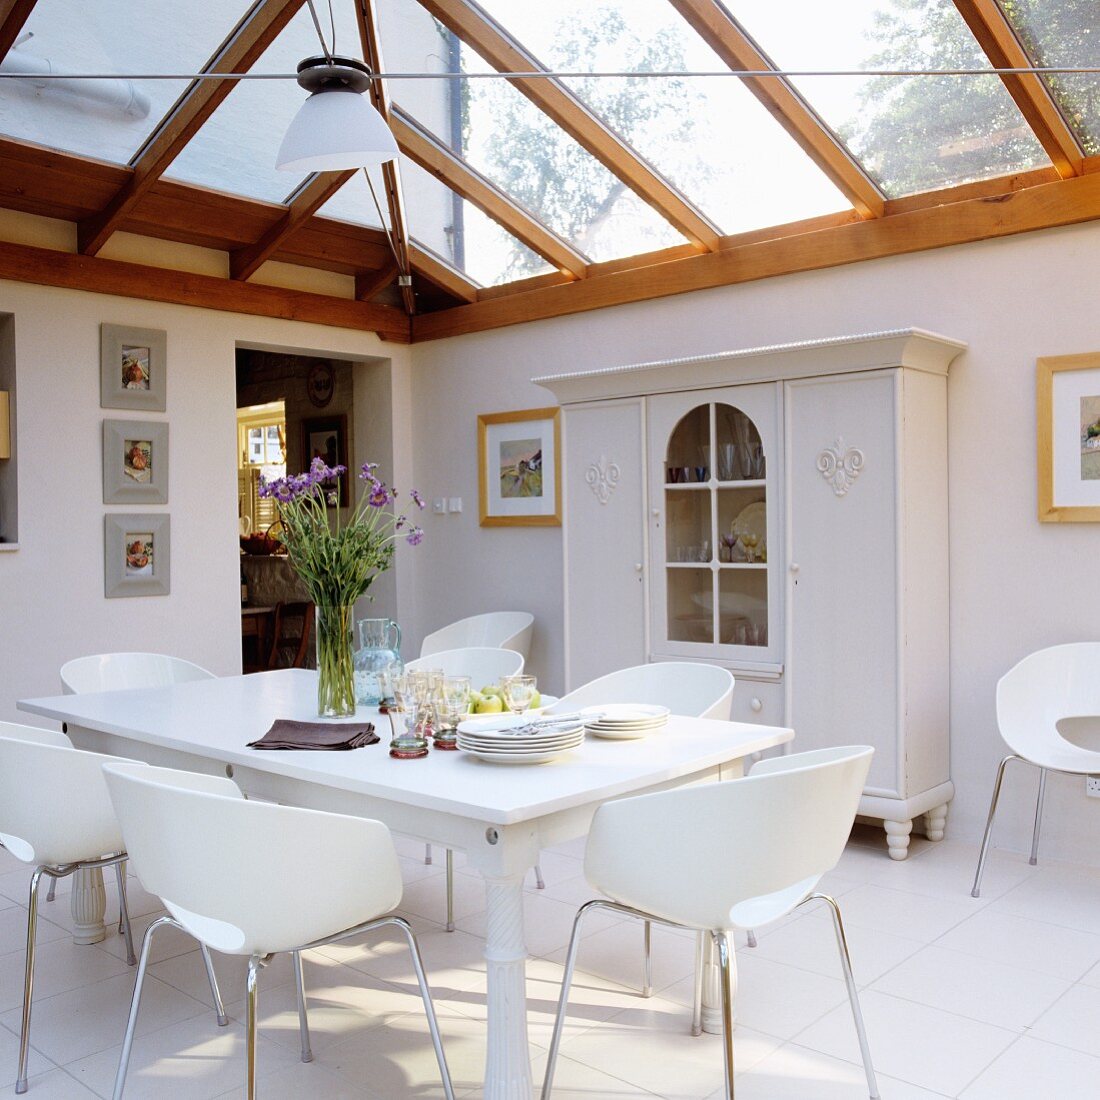 Moderne weiße Schalenstühle an Esstisch gegenüber Bauernschrank in Anbau mit Dach aus Holz- und Glaskonstruktion